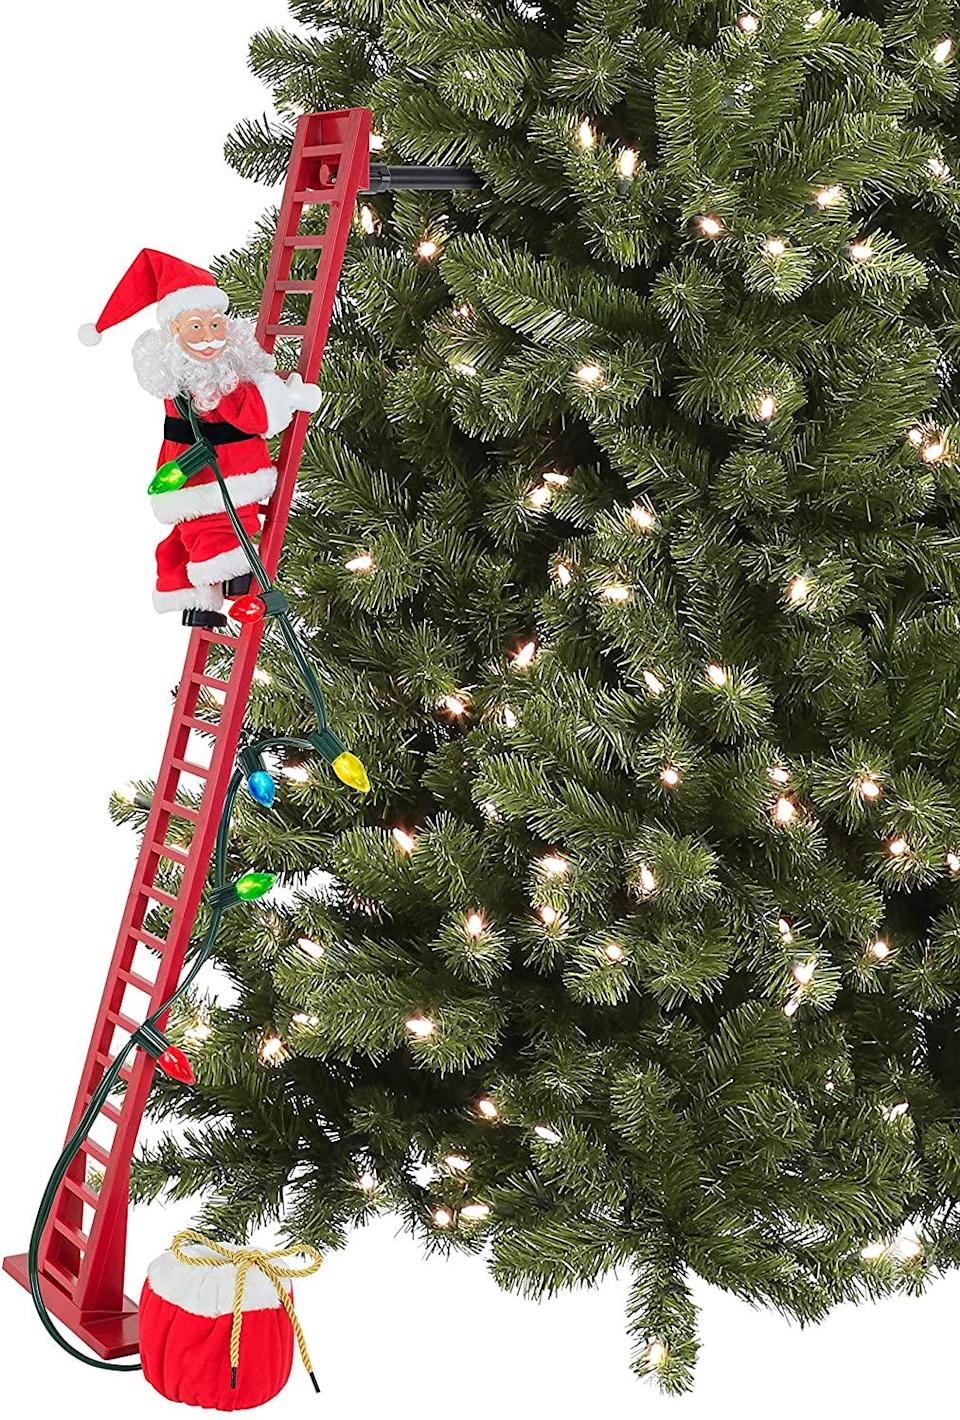 santa climbing ladder model